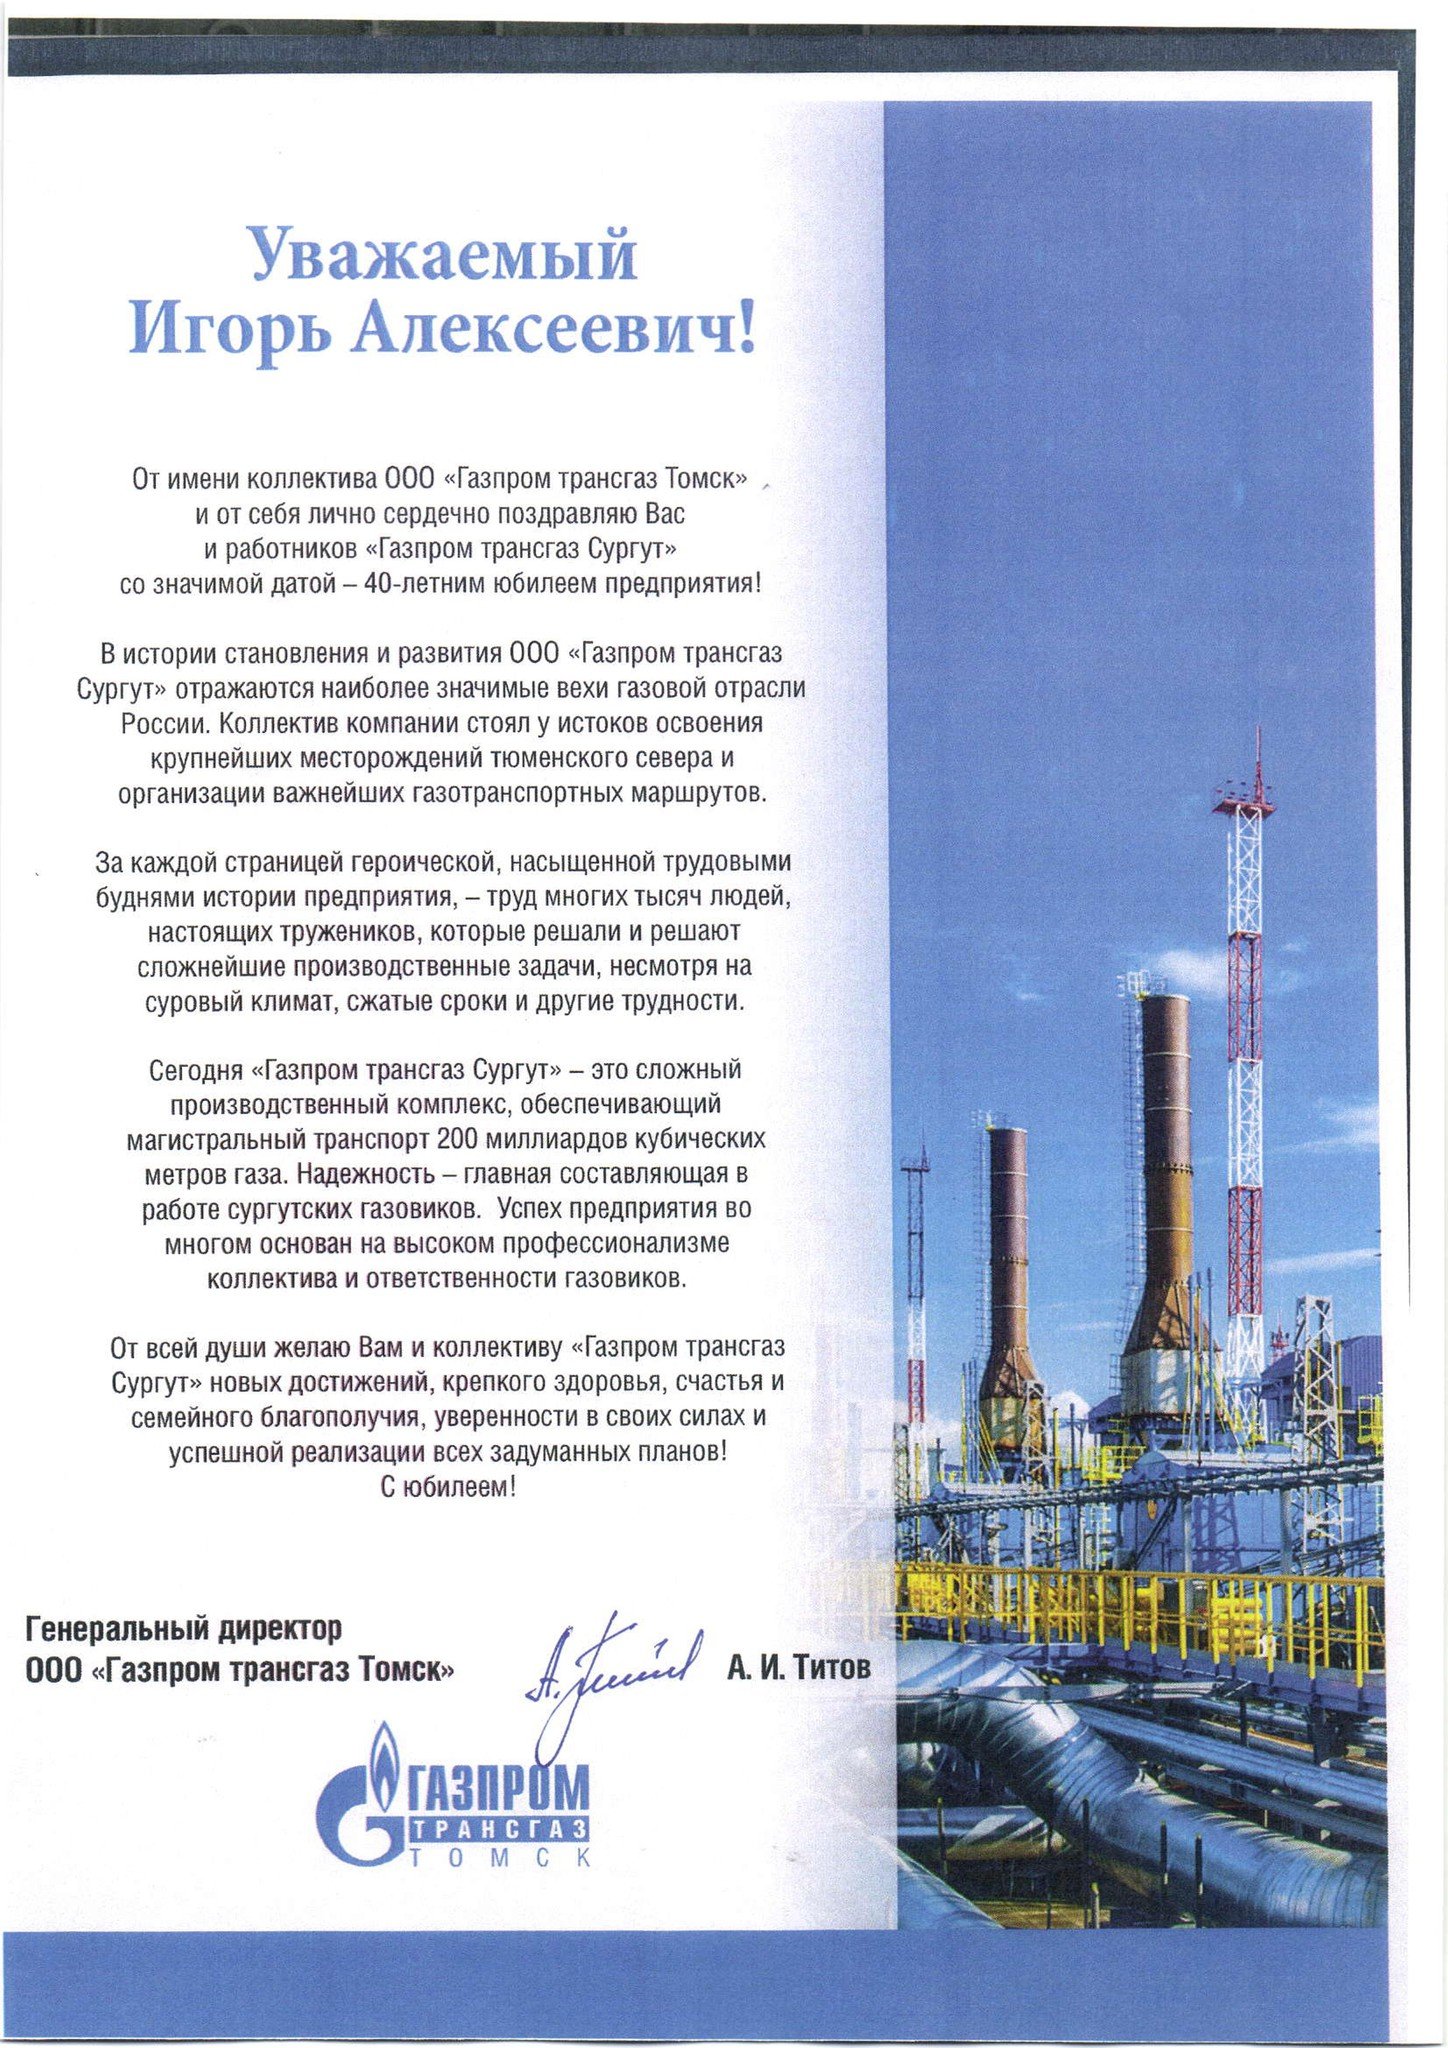 Поздравление с днем рождения компании Газпром